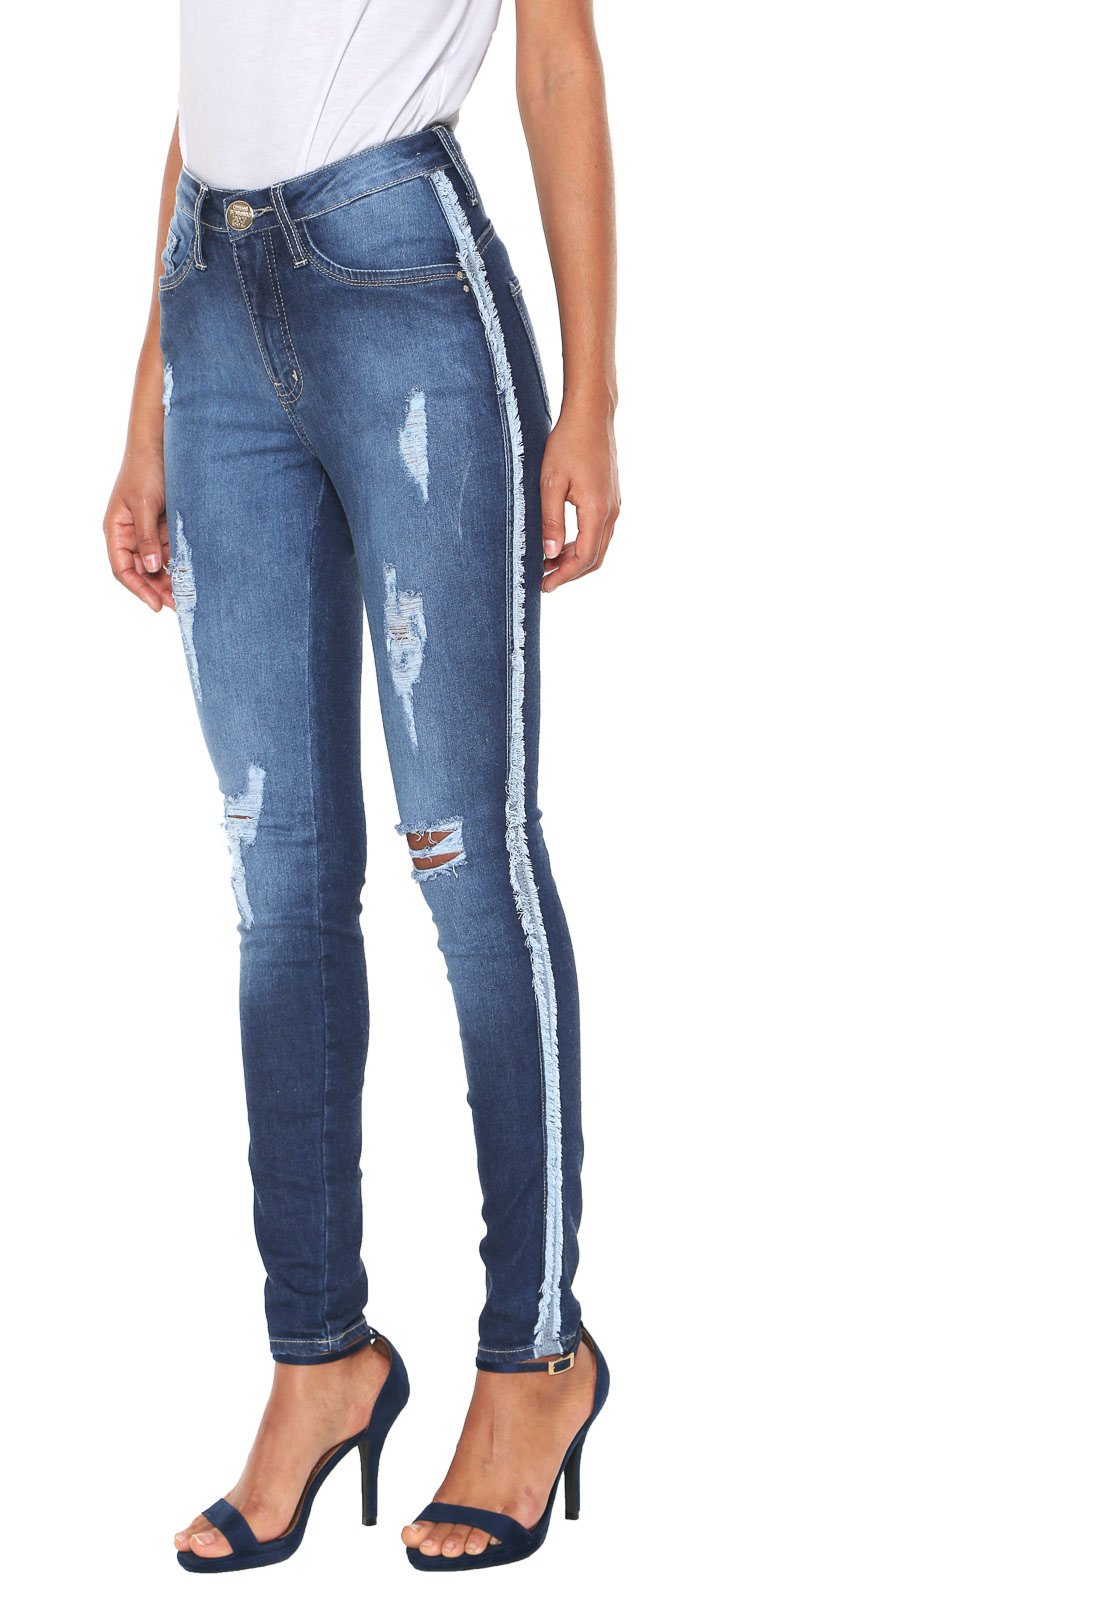 jaqueta jeans com estampa